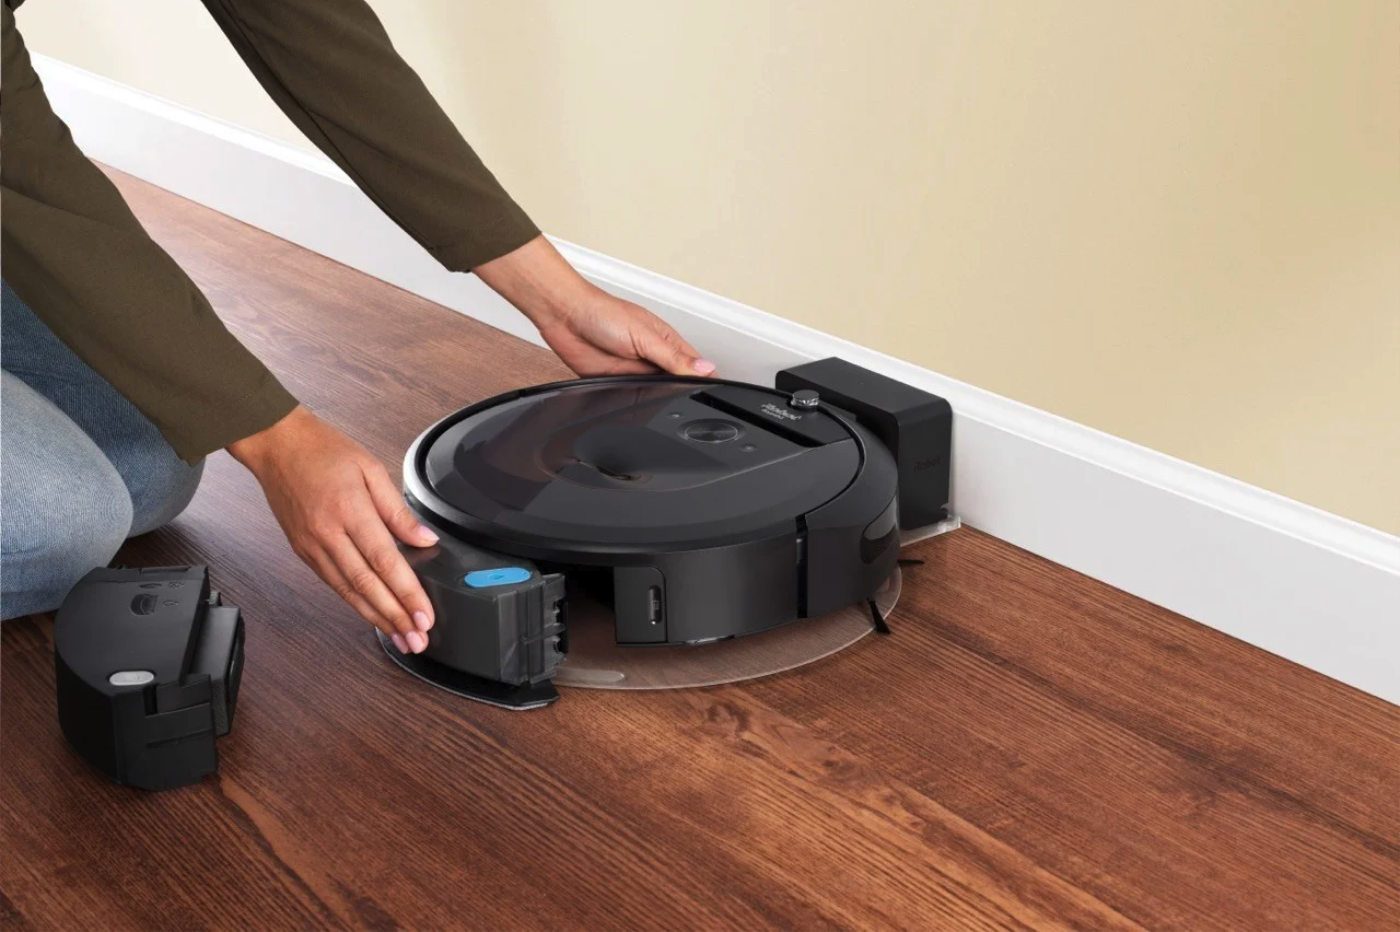 Voici où trouver cet aspirateur laveur robot iRobot Roomba au meilleur prix